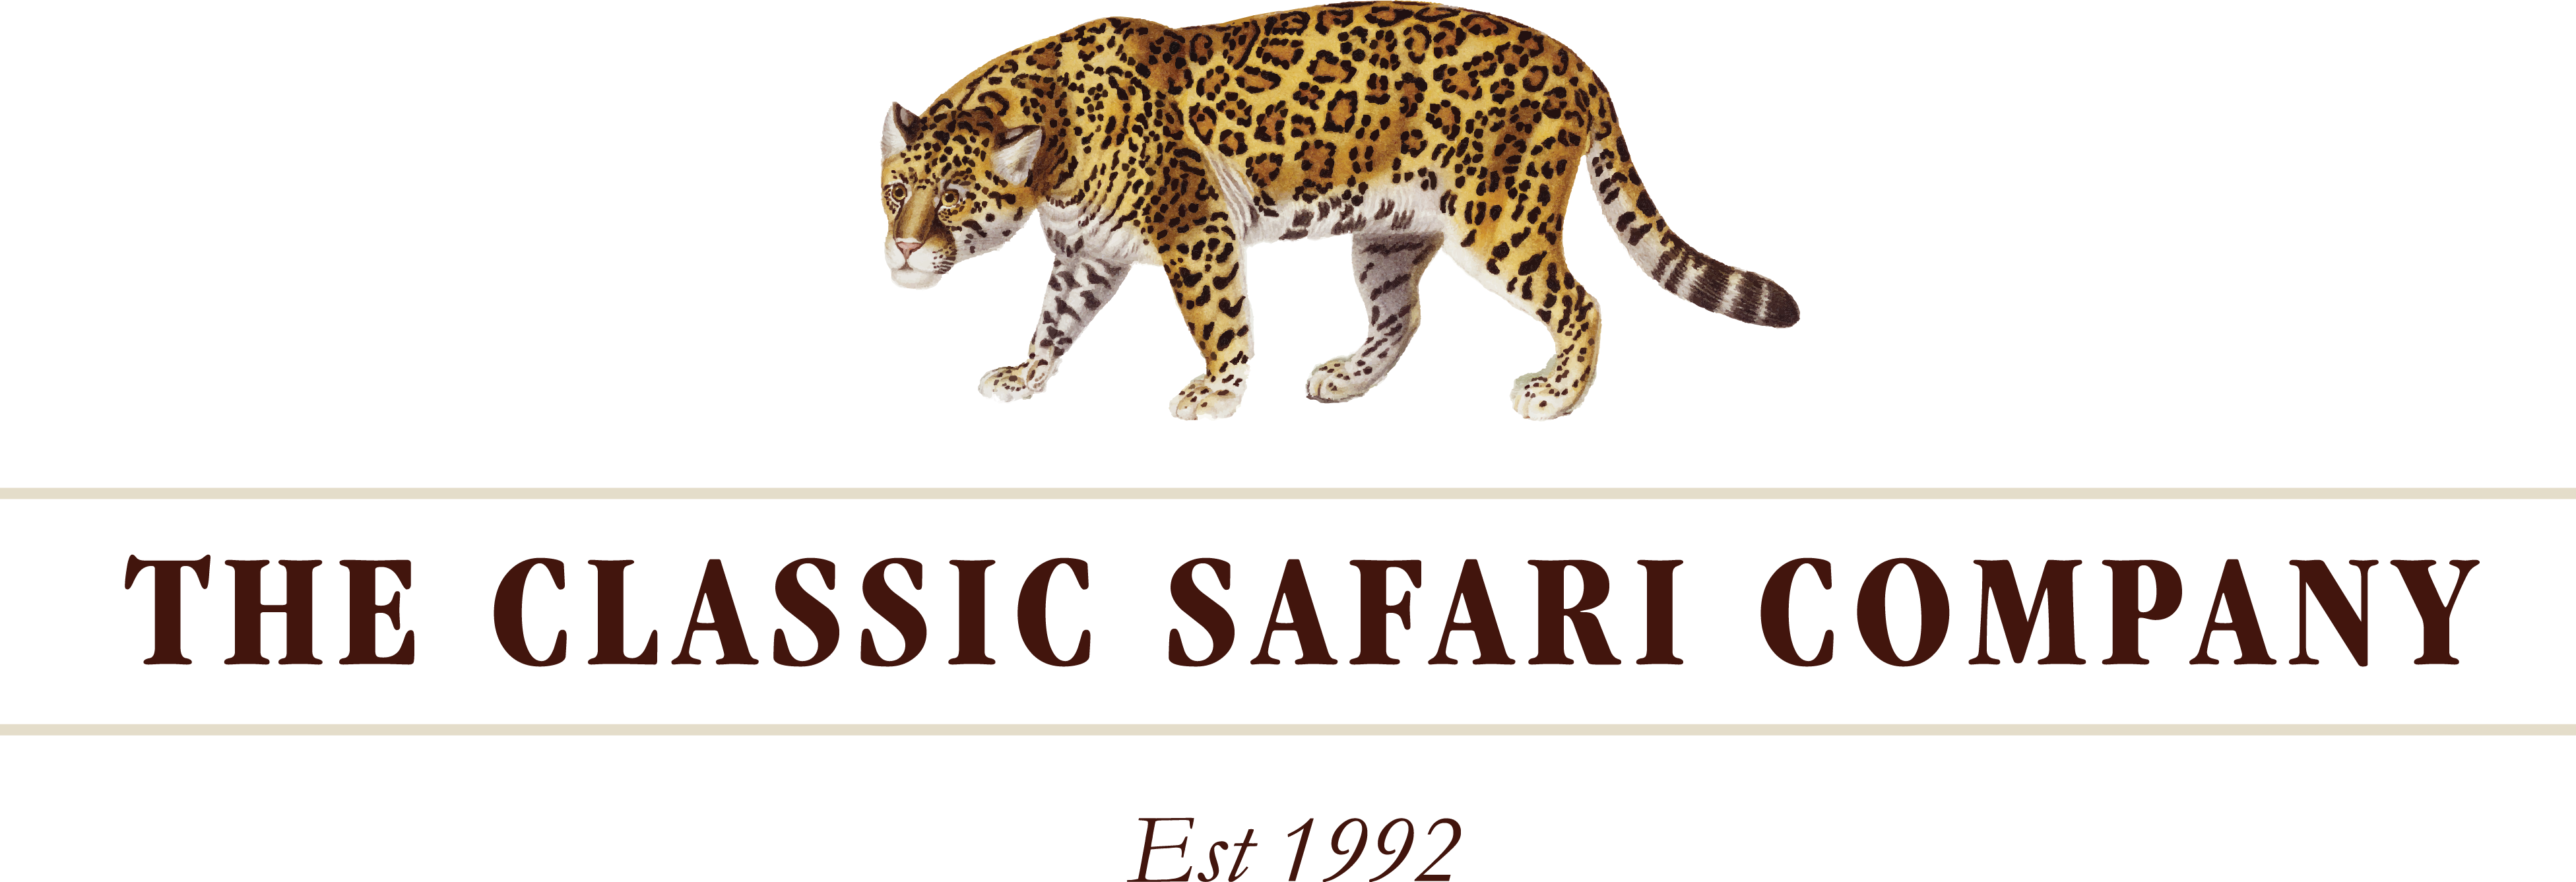 The Classic Safari Company